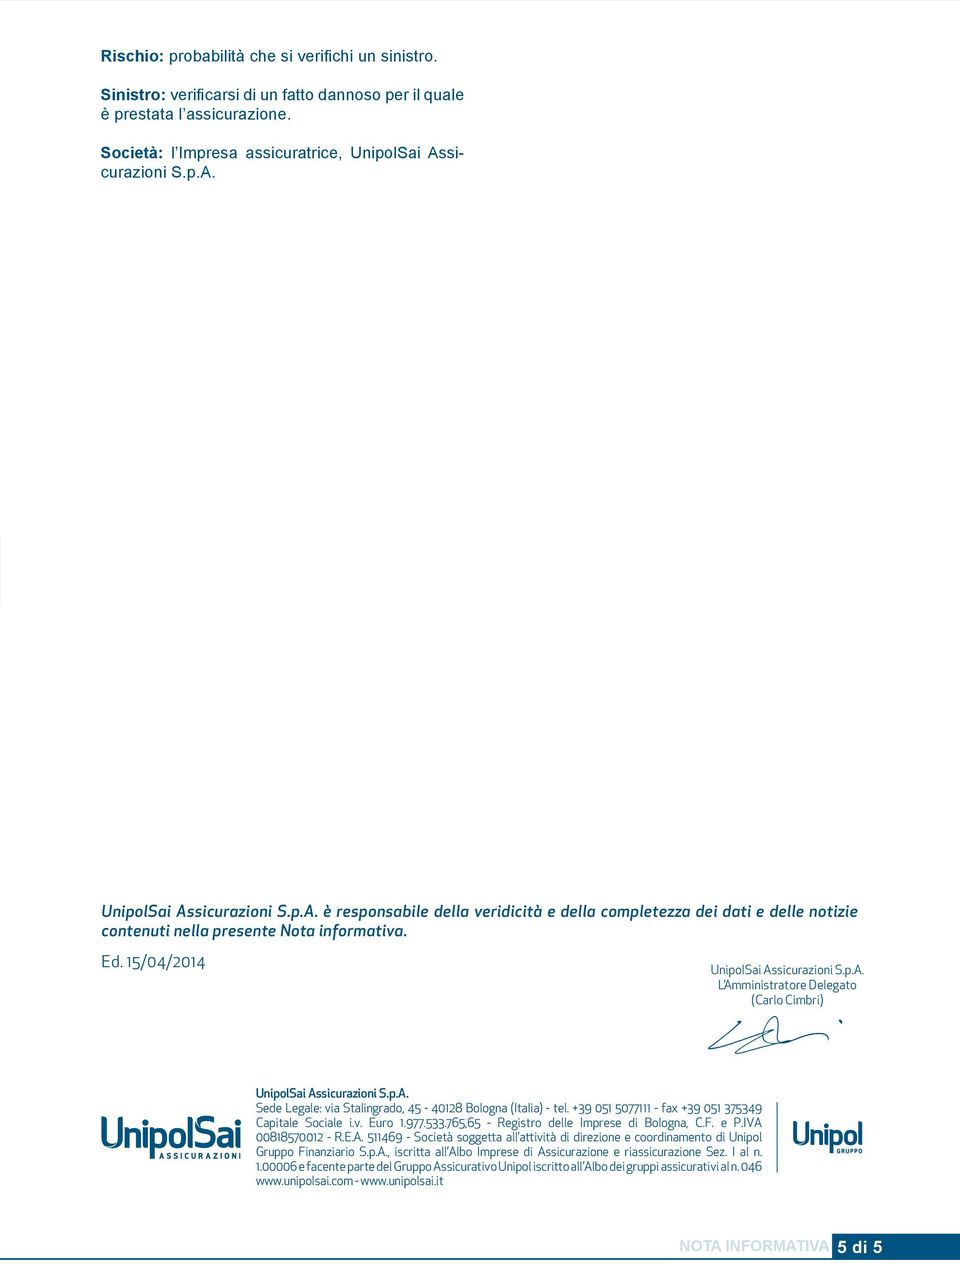 15/04/2014 UnipolSai Assicurazioni S.p.A. L Amministratore Delegato (Carlo Cimbri) UnipolSai Assicurazioni S.p.A. Sede Legale: via Stalingrado, 45-40128 Bologna (Italia) - tel.